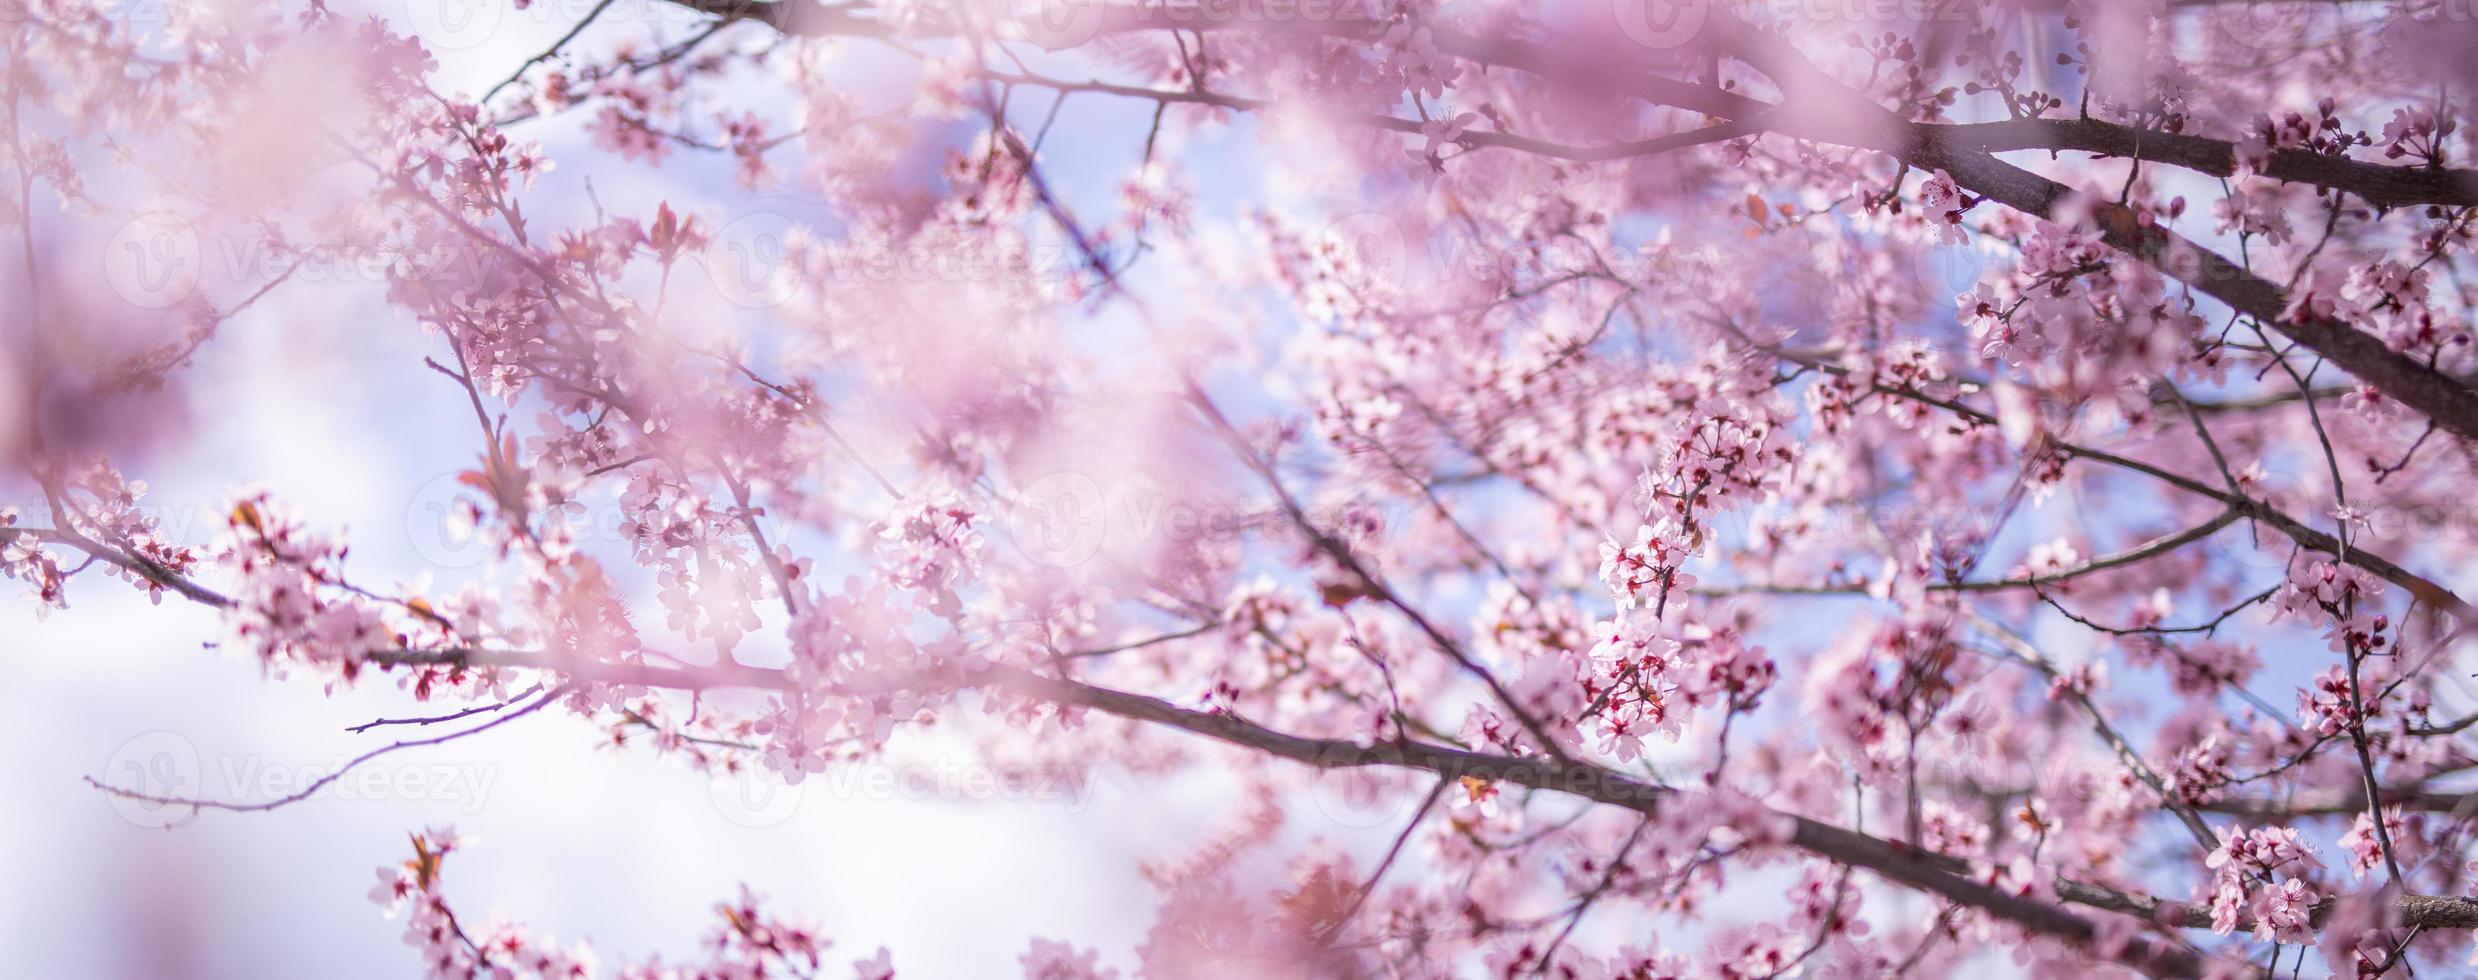 Increíble primer plano de la naturaleza, cerezo en flor en el fondo borroso del bokeh. flores rosadas de sakura, increíble naturaleza romántica de ensueño colorida. diseño de banner floral de amor foto